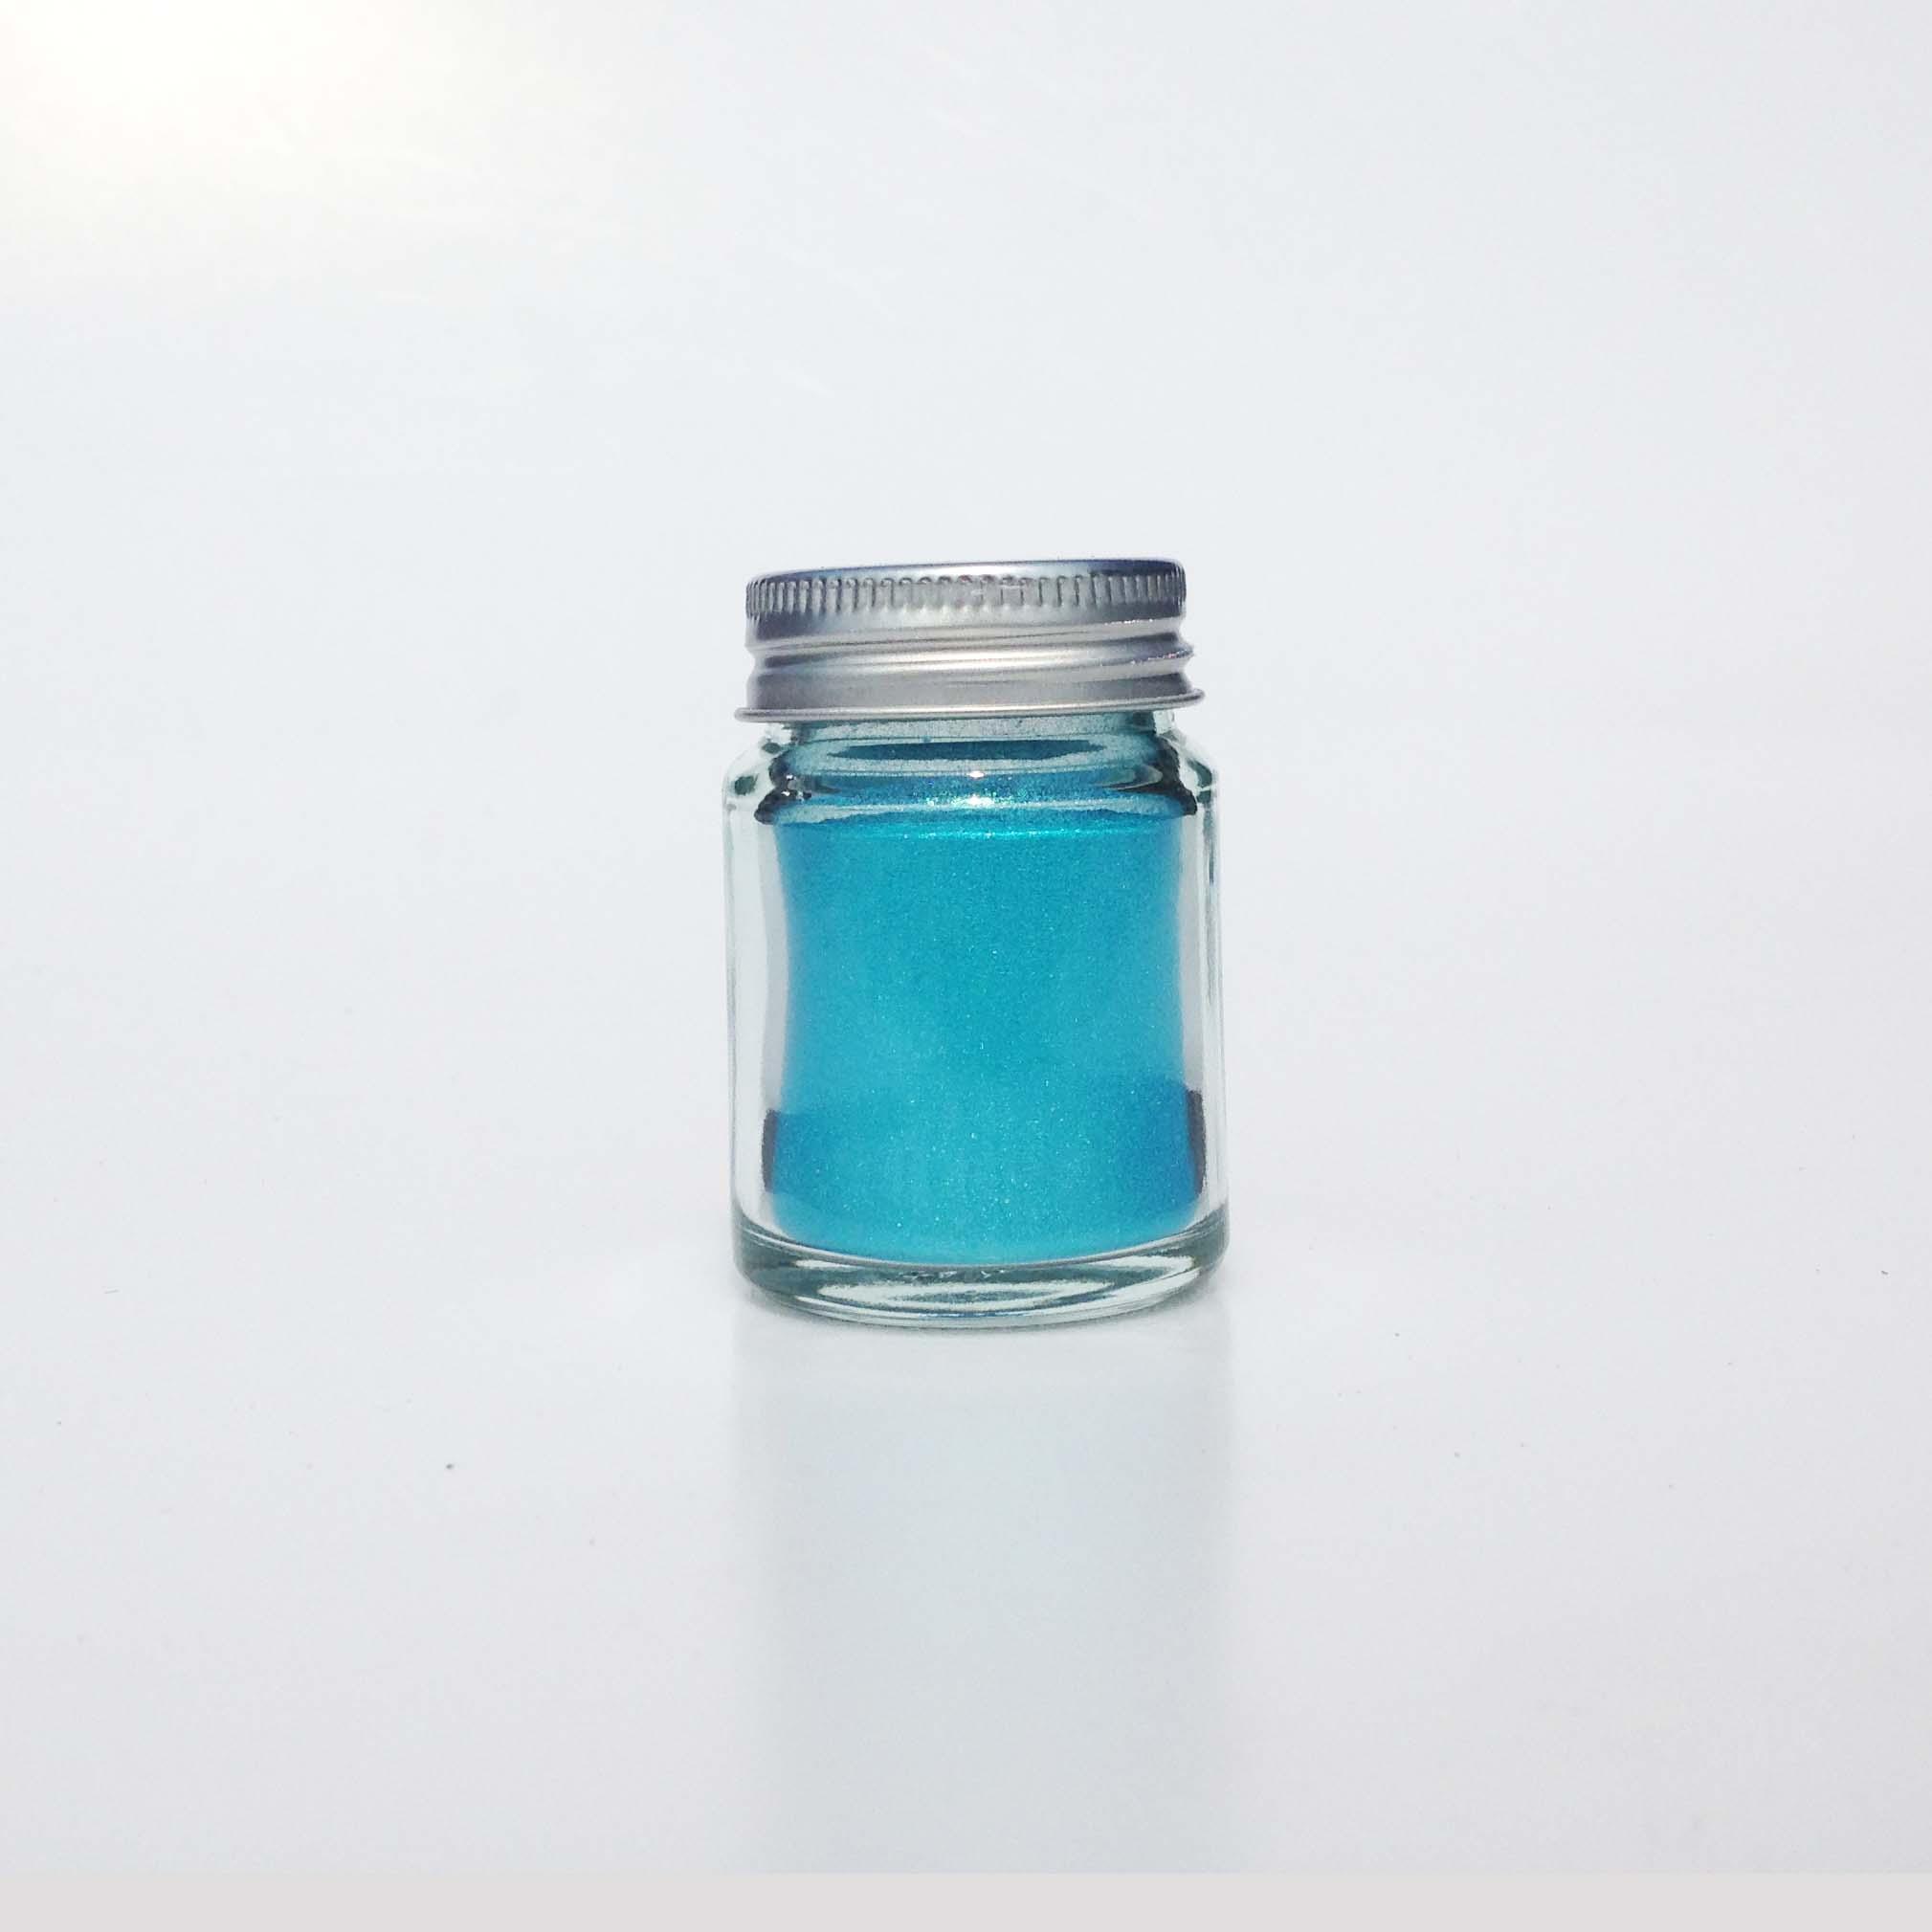 สีเรซิ่น สีฟ้าทะเลเมทัลลิคประกาย สีสด ใช้กับเรซิ่นทุกชนิด -Easy Resin